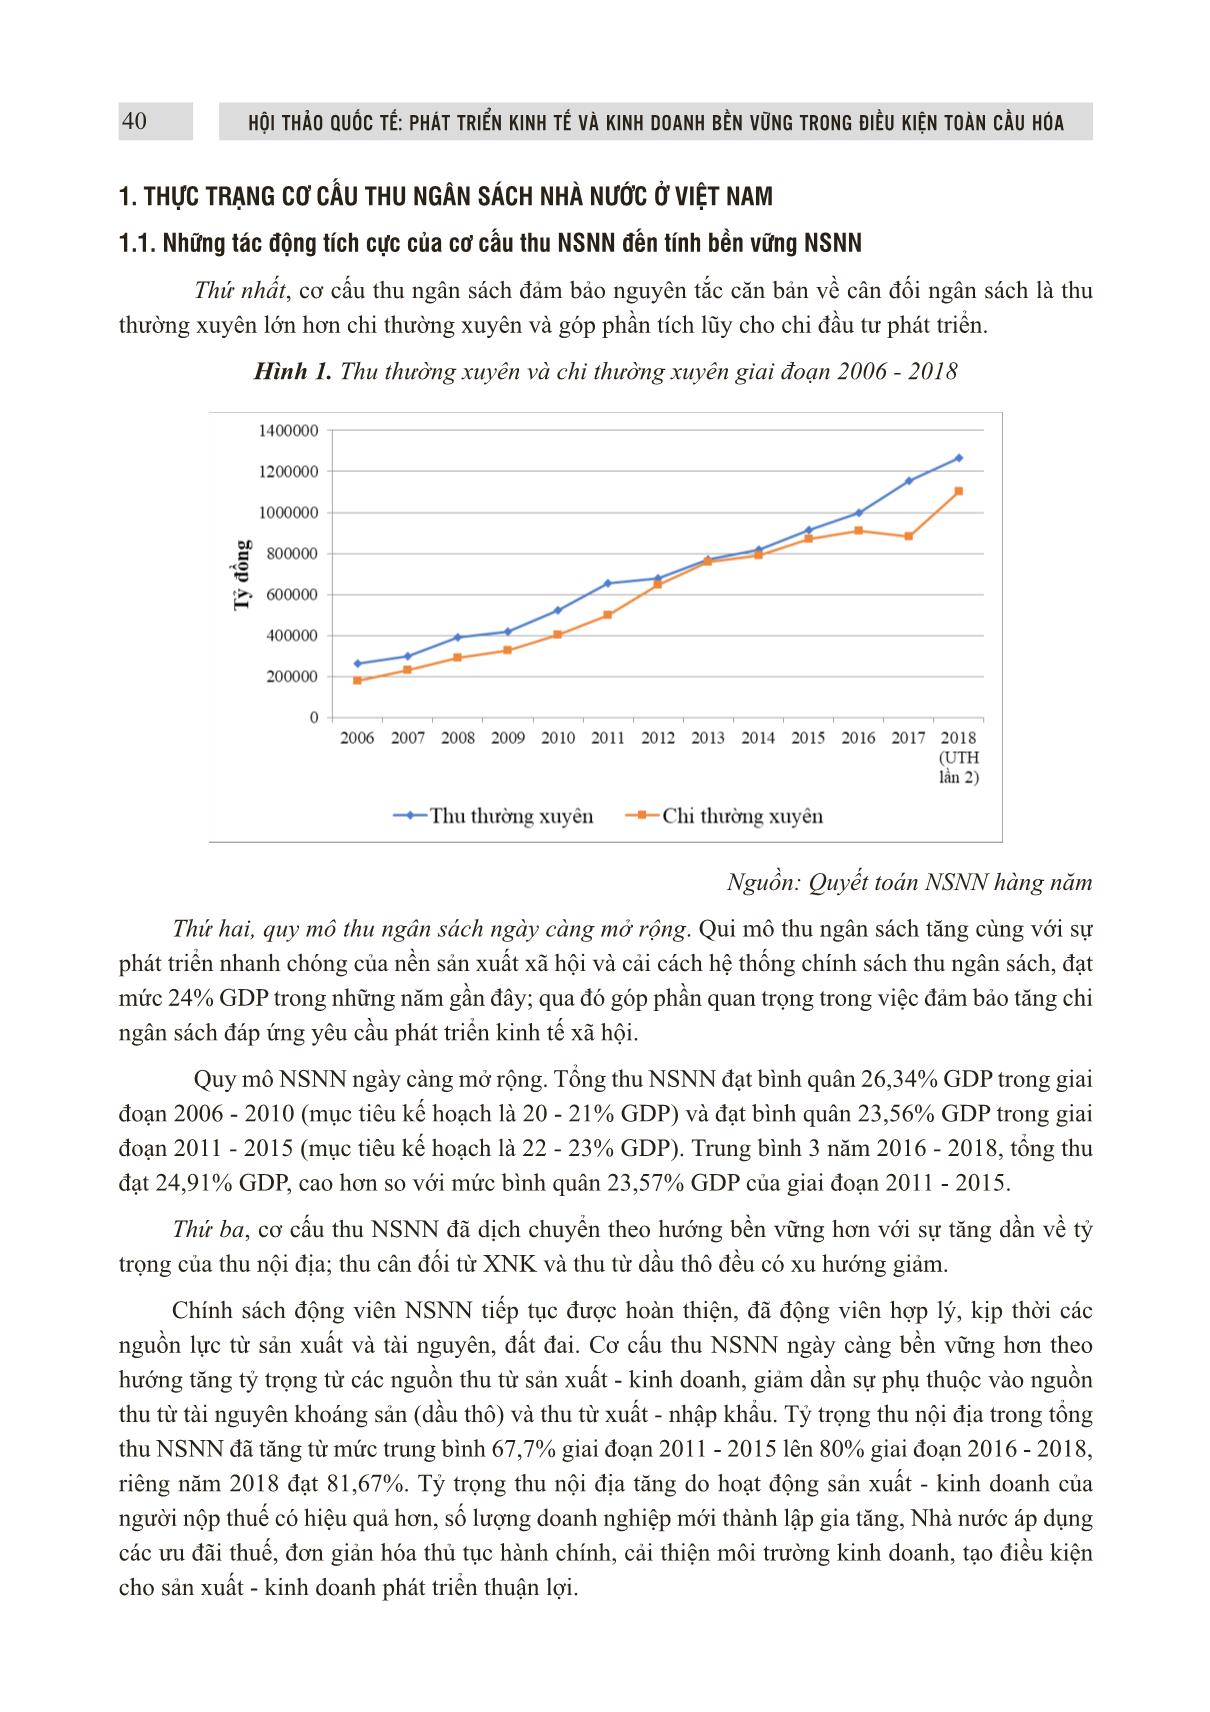 Đổi mới cơ cấu thu ngân sách nhà nước ở Việt Nam theo hướng bền vững trang 2